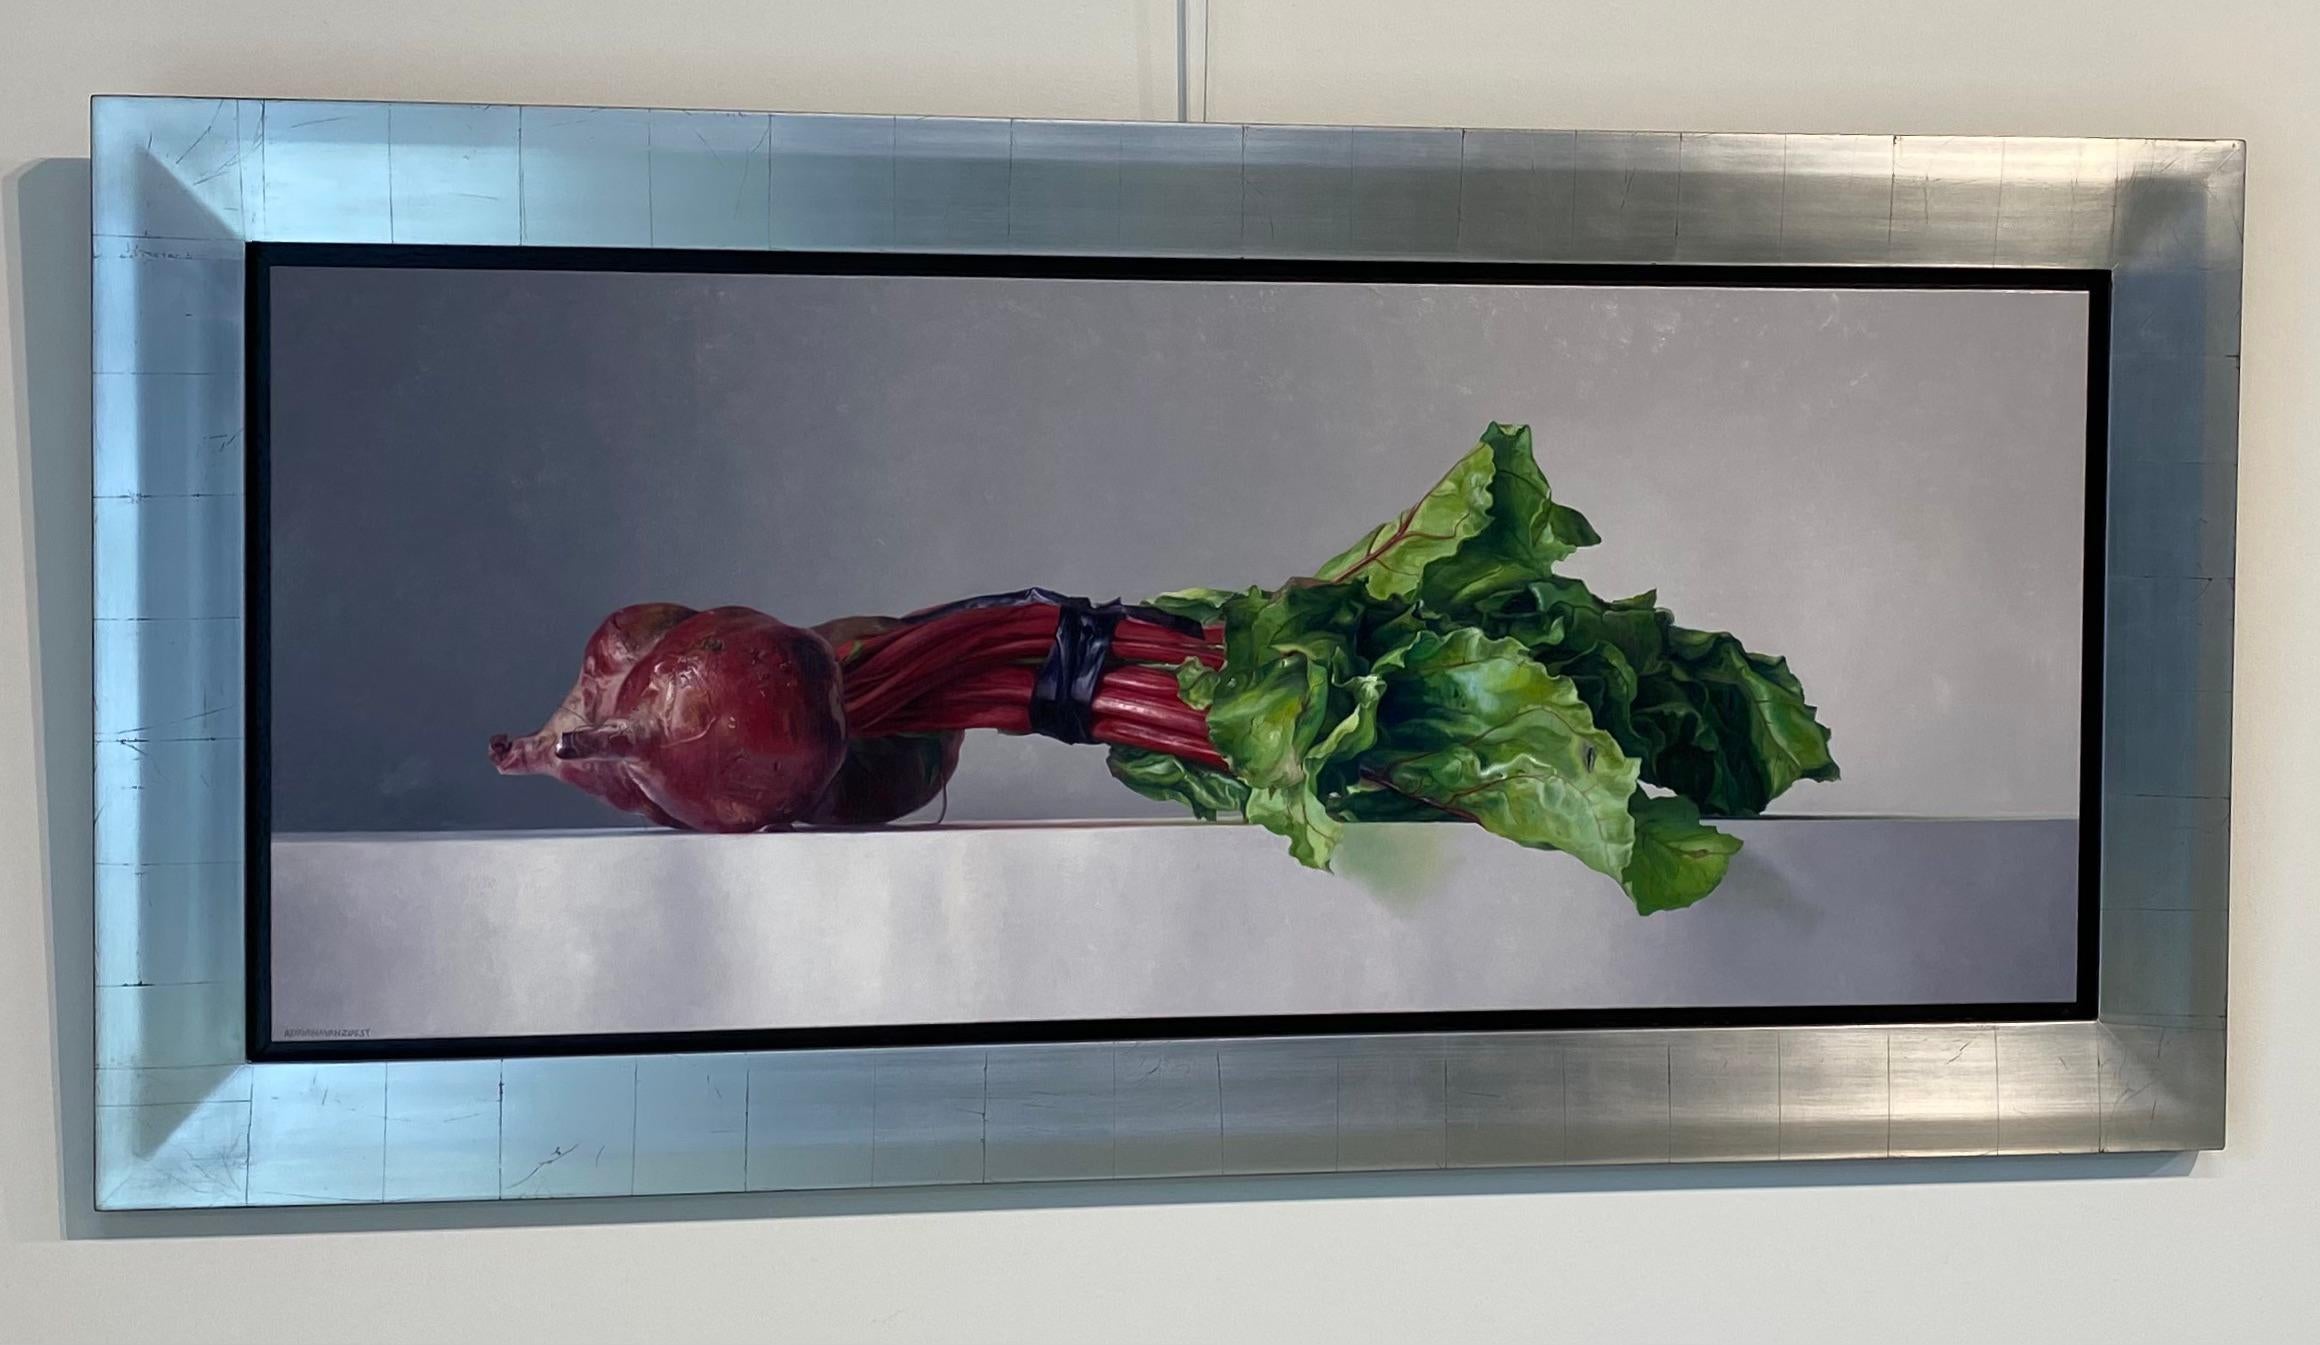 Beets - Nature morte néerlandaise contemporaine du 21e siècle - Légumes - Painting de Adriana van Zoest